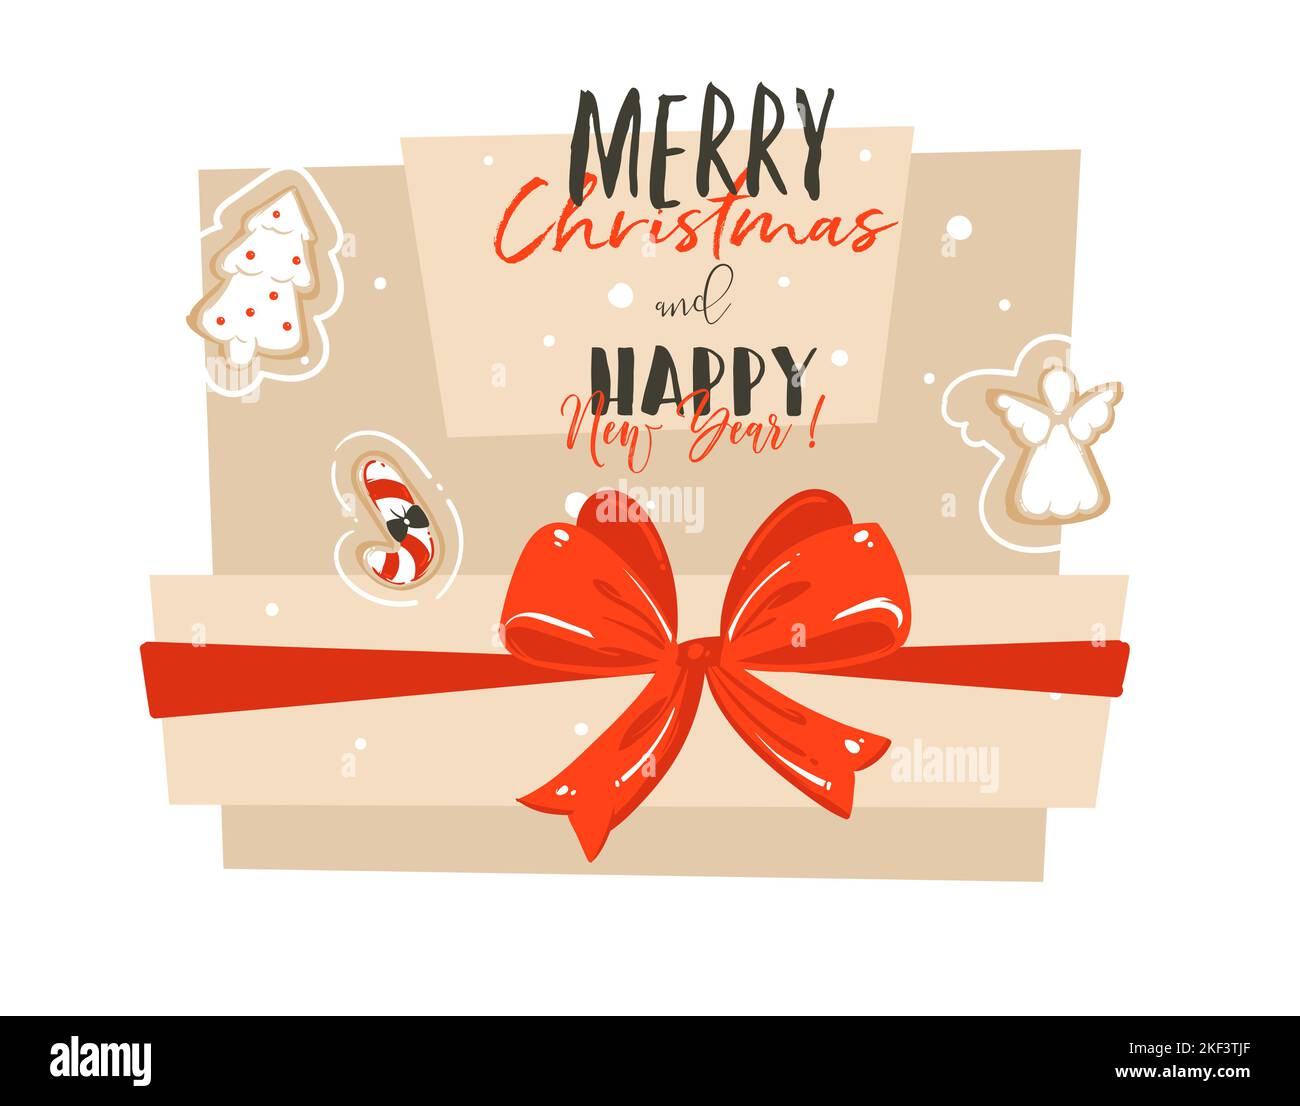 Abstrait vectoriel dessiné à la main Joyeux Noël et joyeux nouvel an dessin animé carte de voeux avec grande boîte cadeau surprise, noeud rouge et moderne Illustration de Vecteur